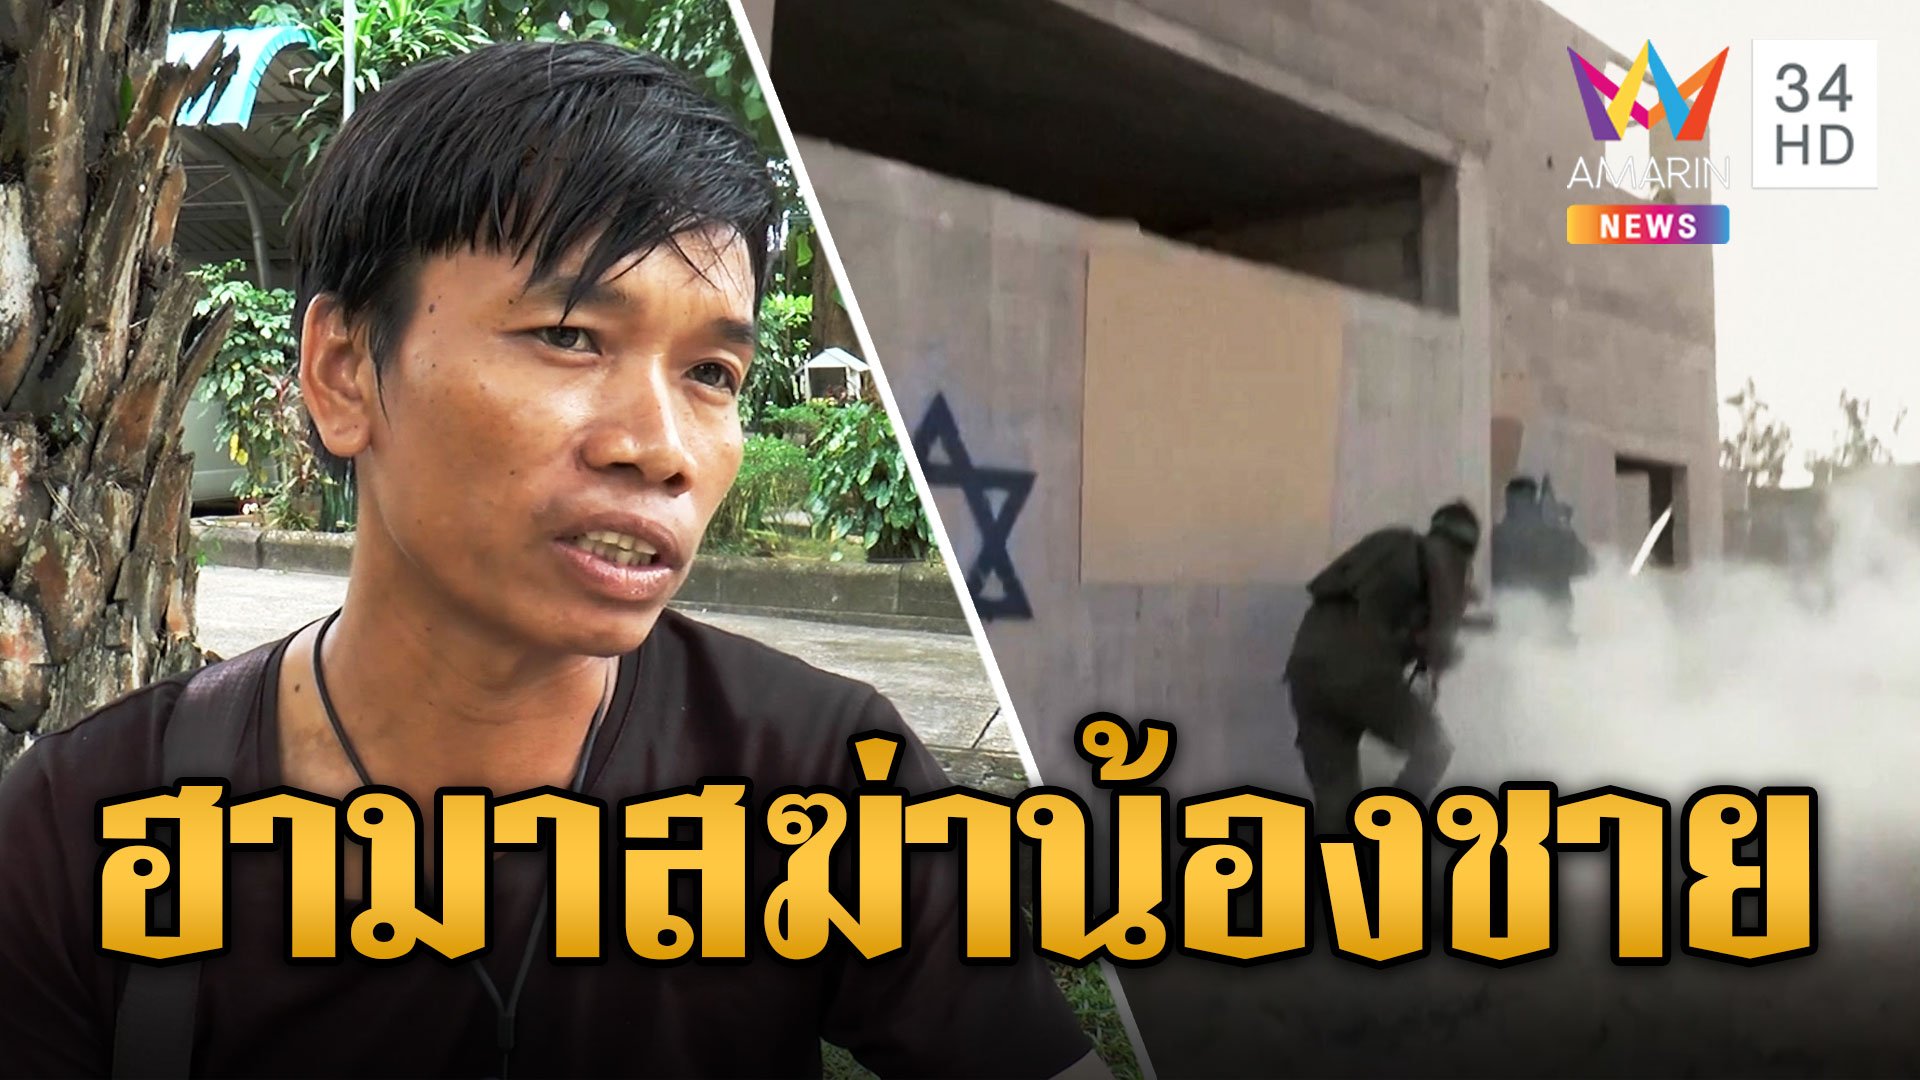 ตั้ม คนงานไทยเศร้าน้องฝาแฝดถูกฮามาสฆ่าปาดคอคาแคมป์คนงาน สลดแรงงานไทยดับเพิ่ม 1 ศพ | ข่าวอรุณอมรินทร์ | 26 ต.ค. 66 | AMARIN TVHD34